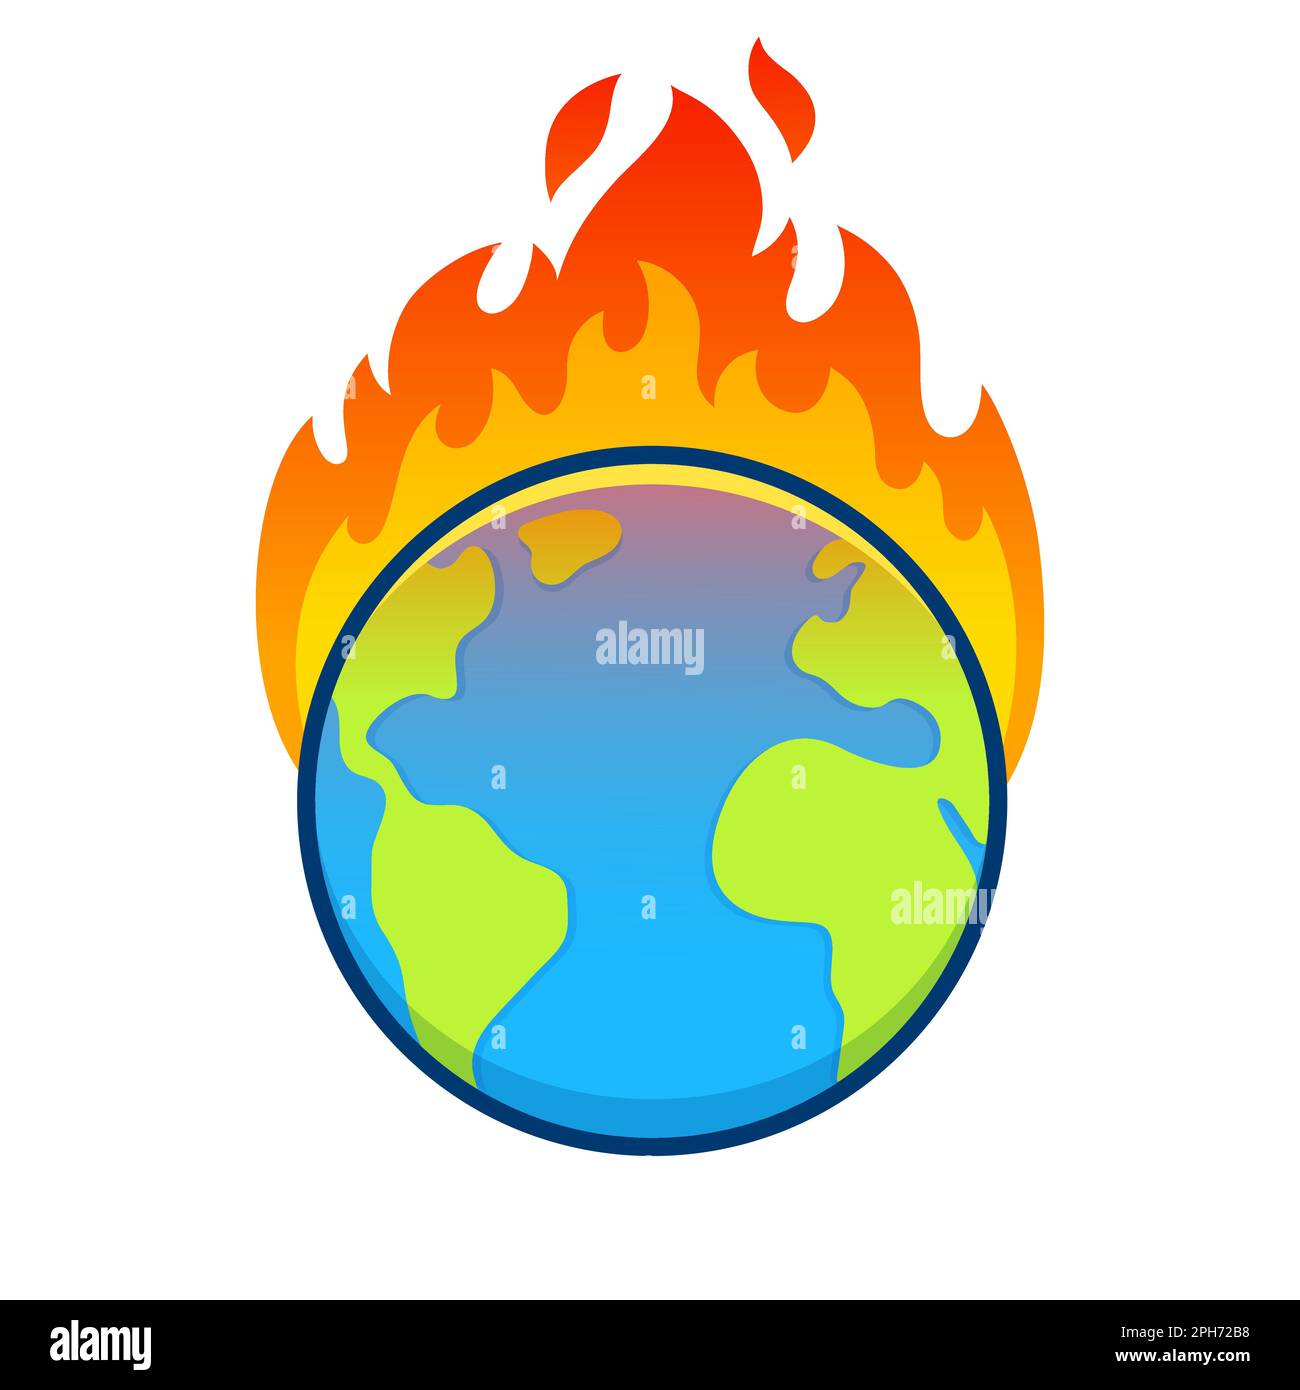 Der Cartoon-Planet Erde brennt, globale Erwärmung und Klimakrise zieht an. Umwelt und Ökologie Vektor-Clip-Art-Illustration. Stock Vektor